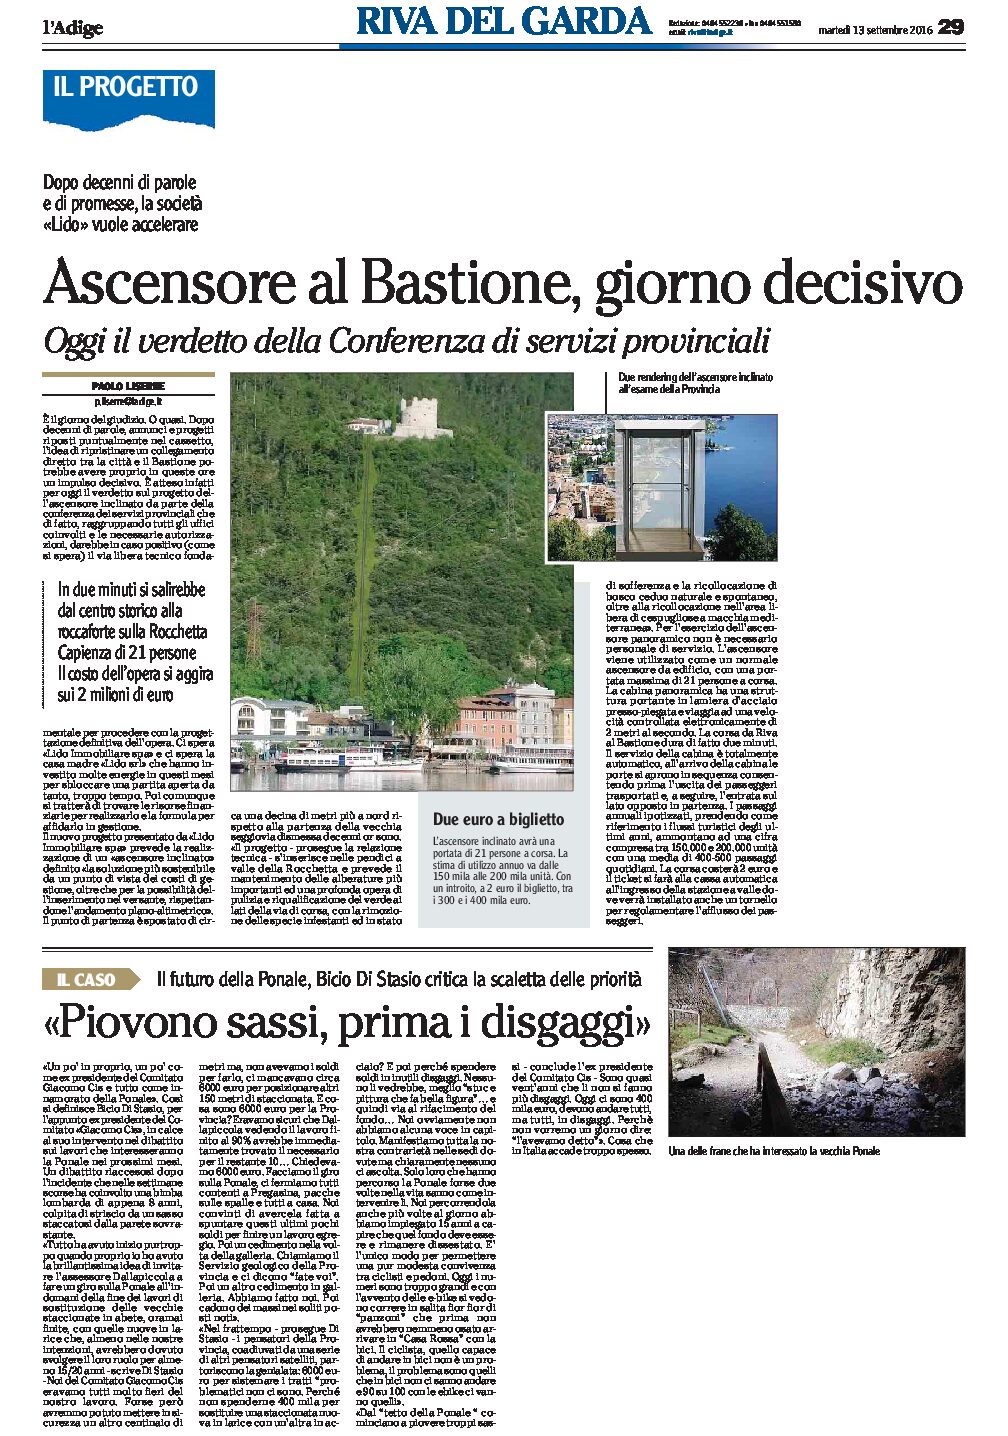 Riva del Garda: ascensore al Bastione, oggi il verdetto. Piovono sassi sulla Ponale